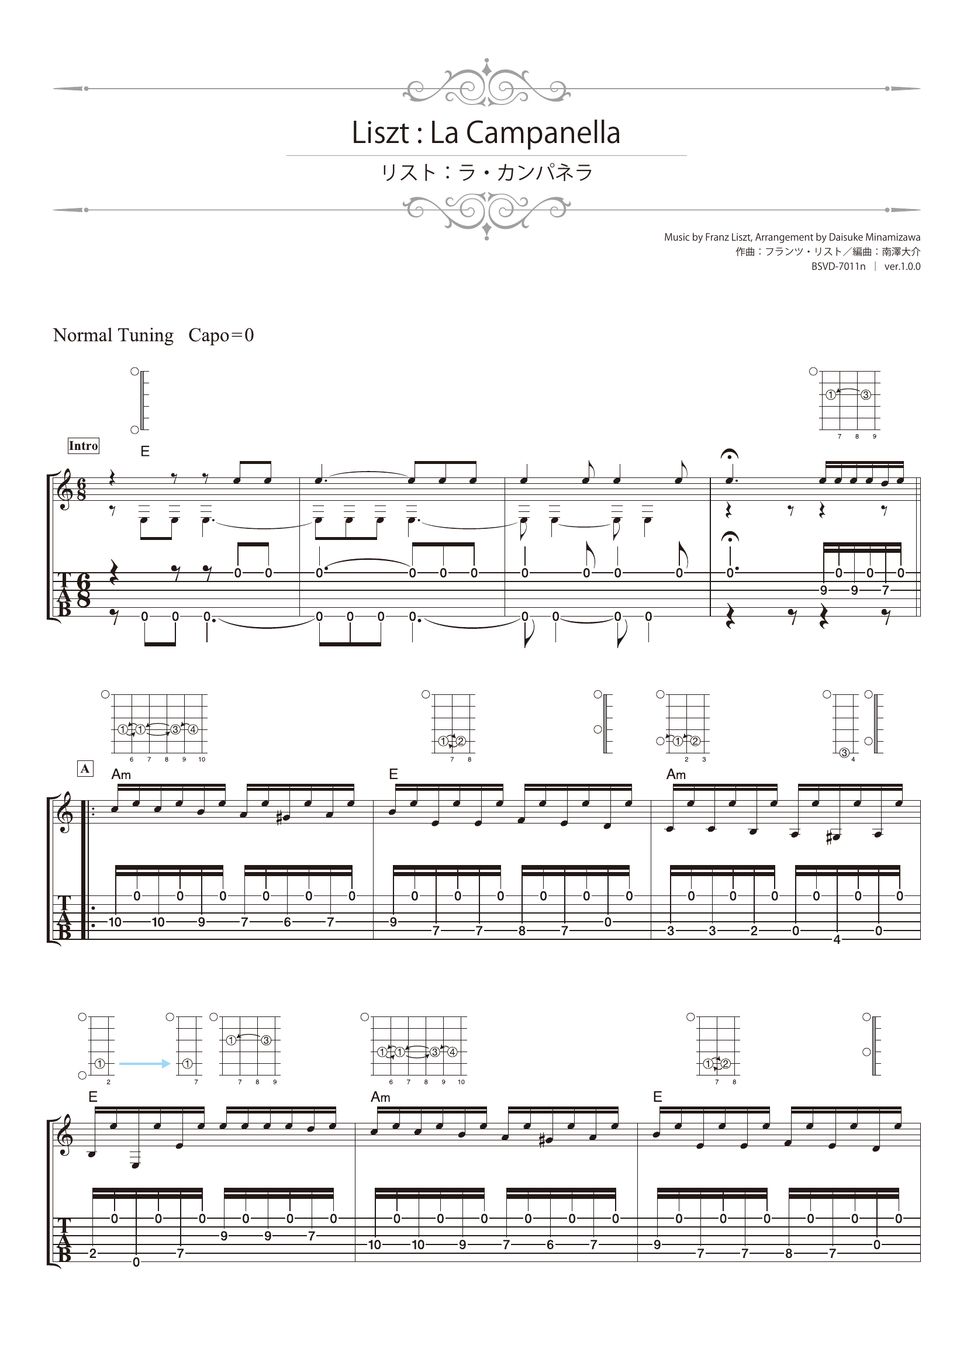 Liszt - La Campanella (Solo Guitar) by Daisuke Minamizawa